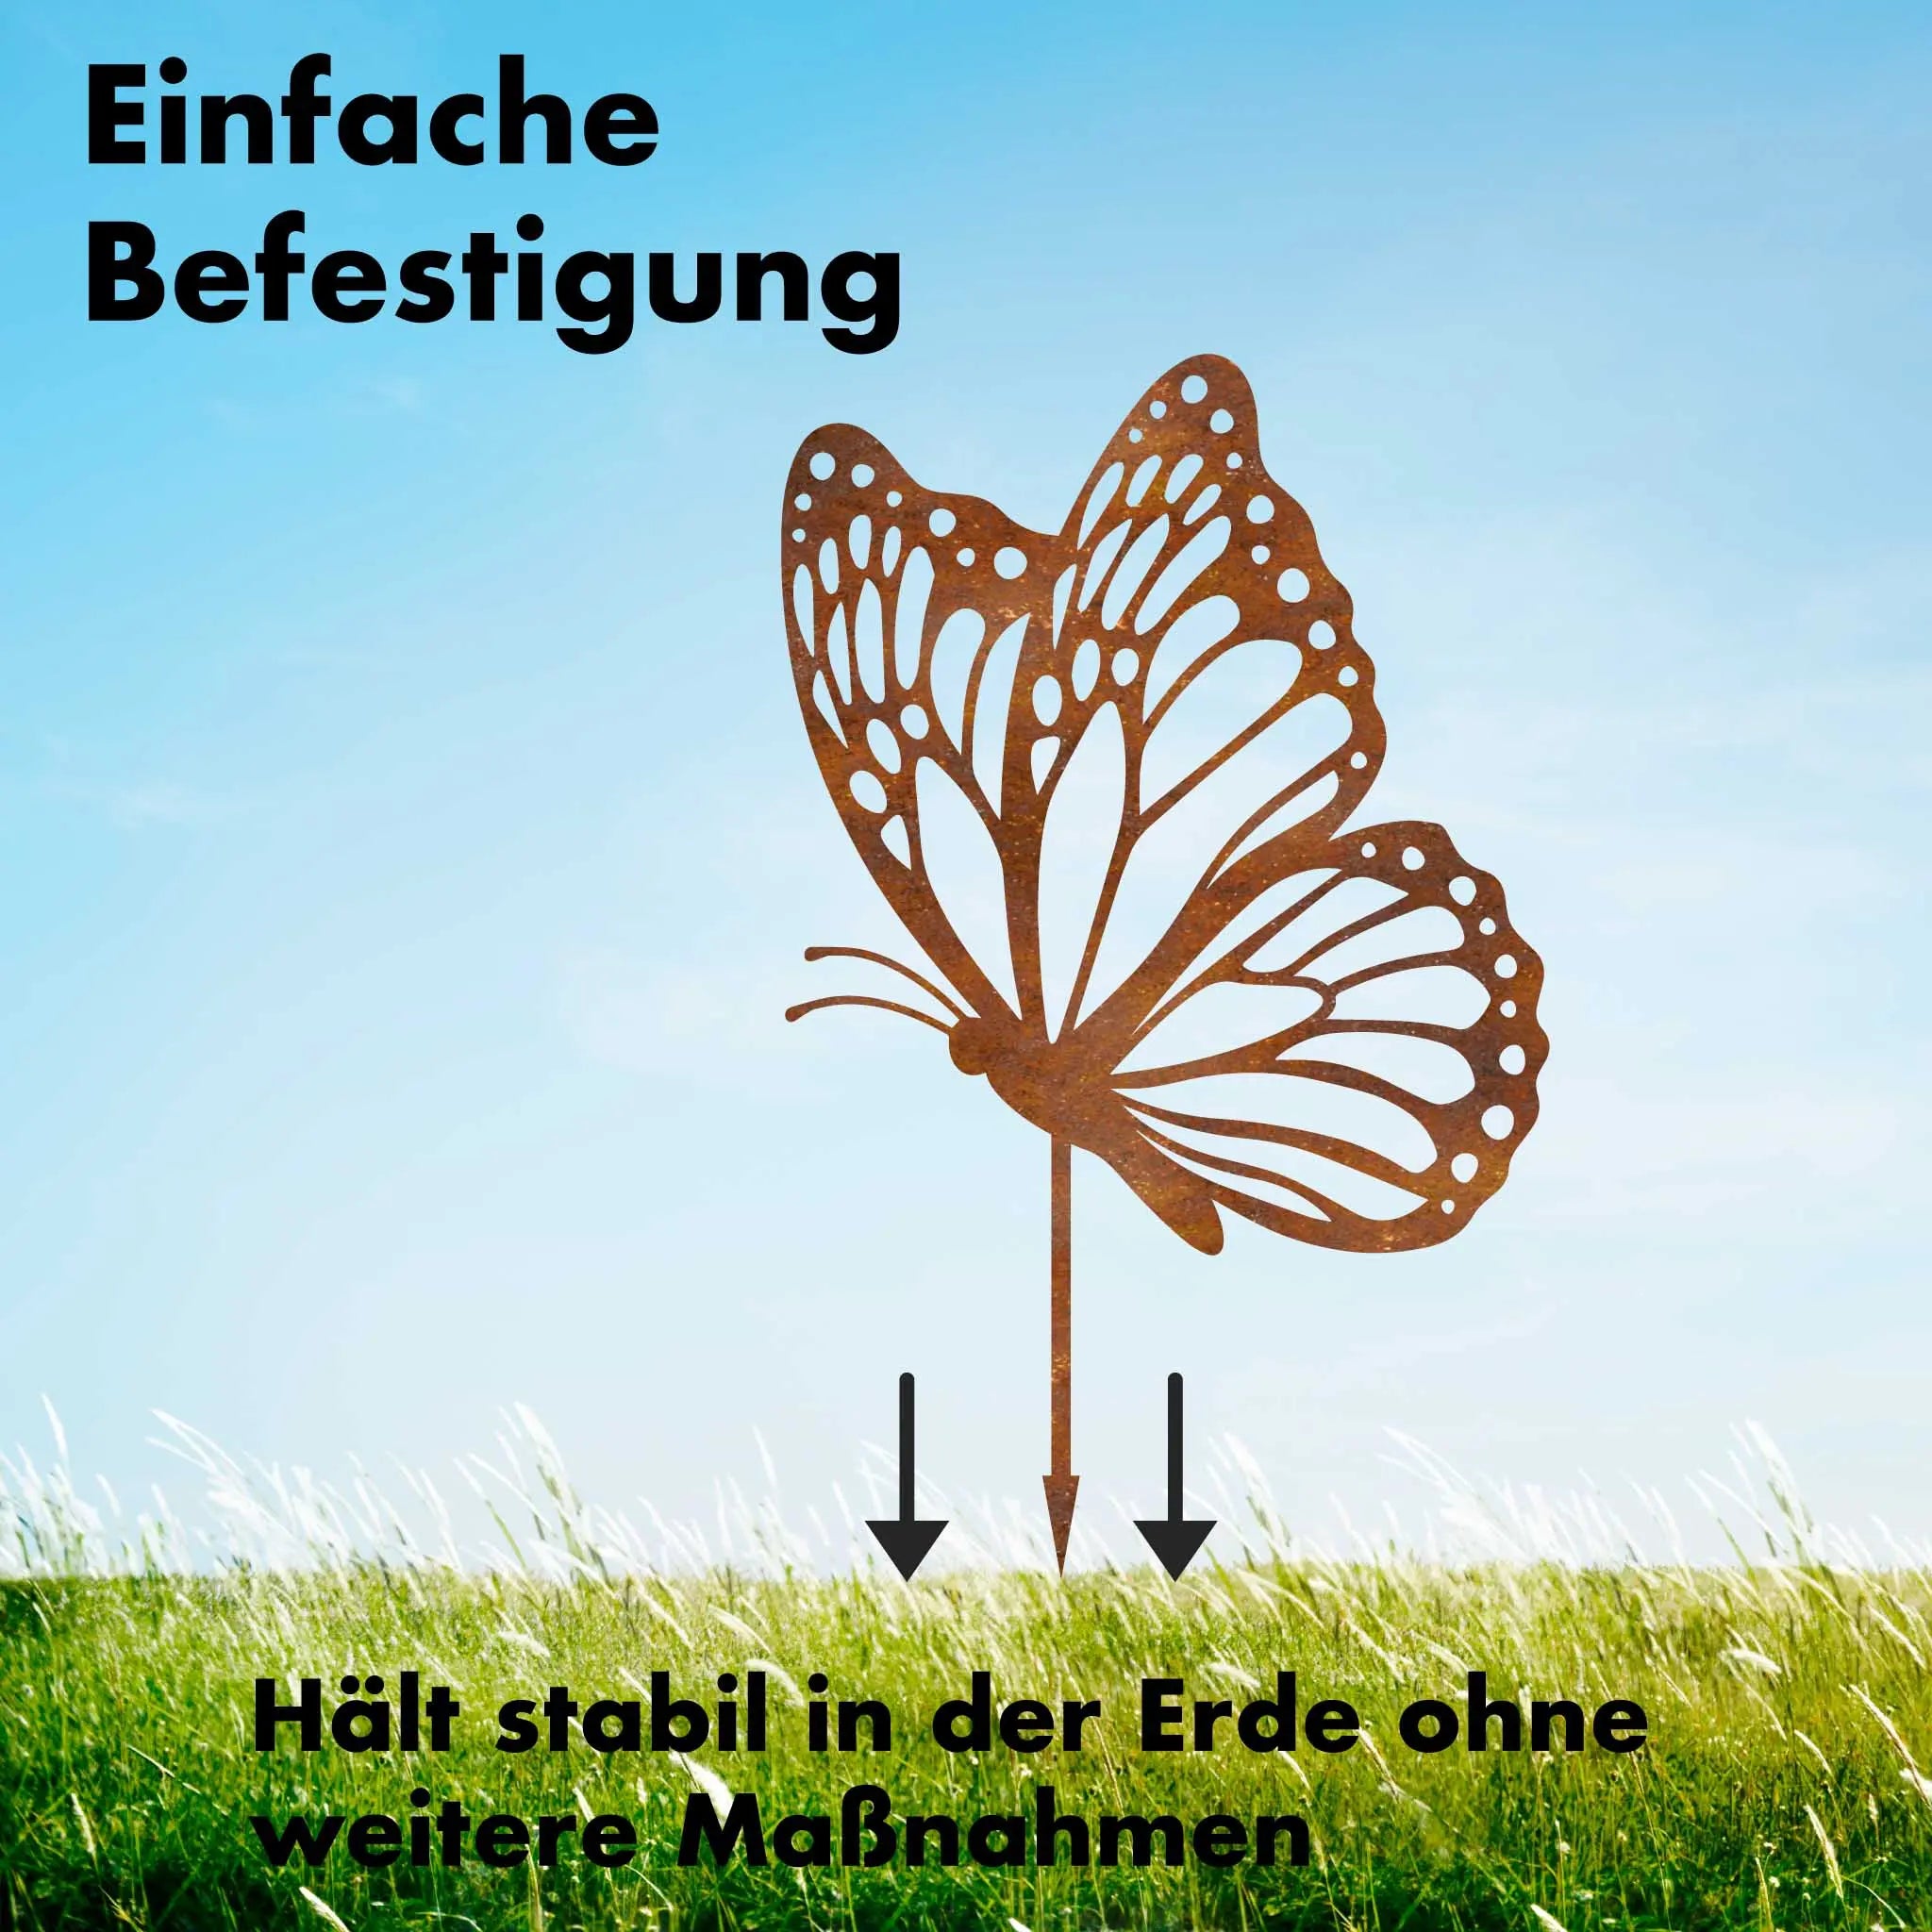 Fliegender Schmetterling -  Blumenstecker